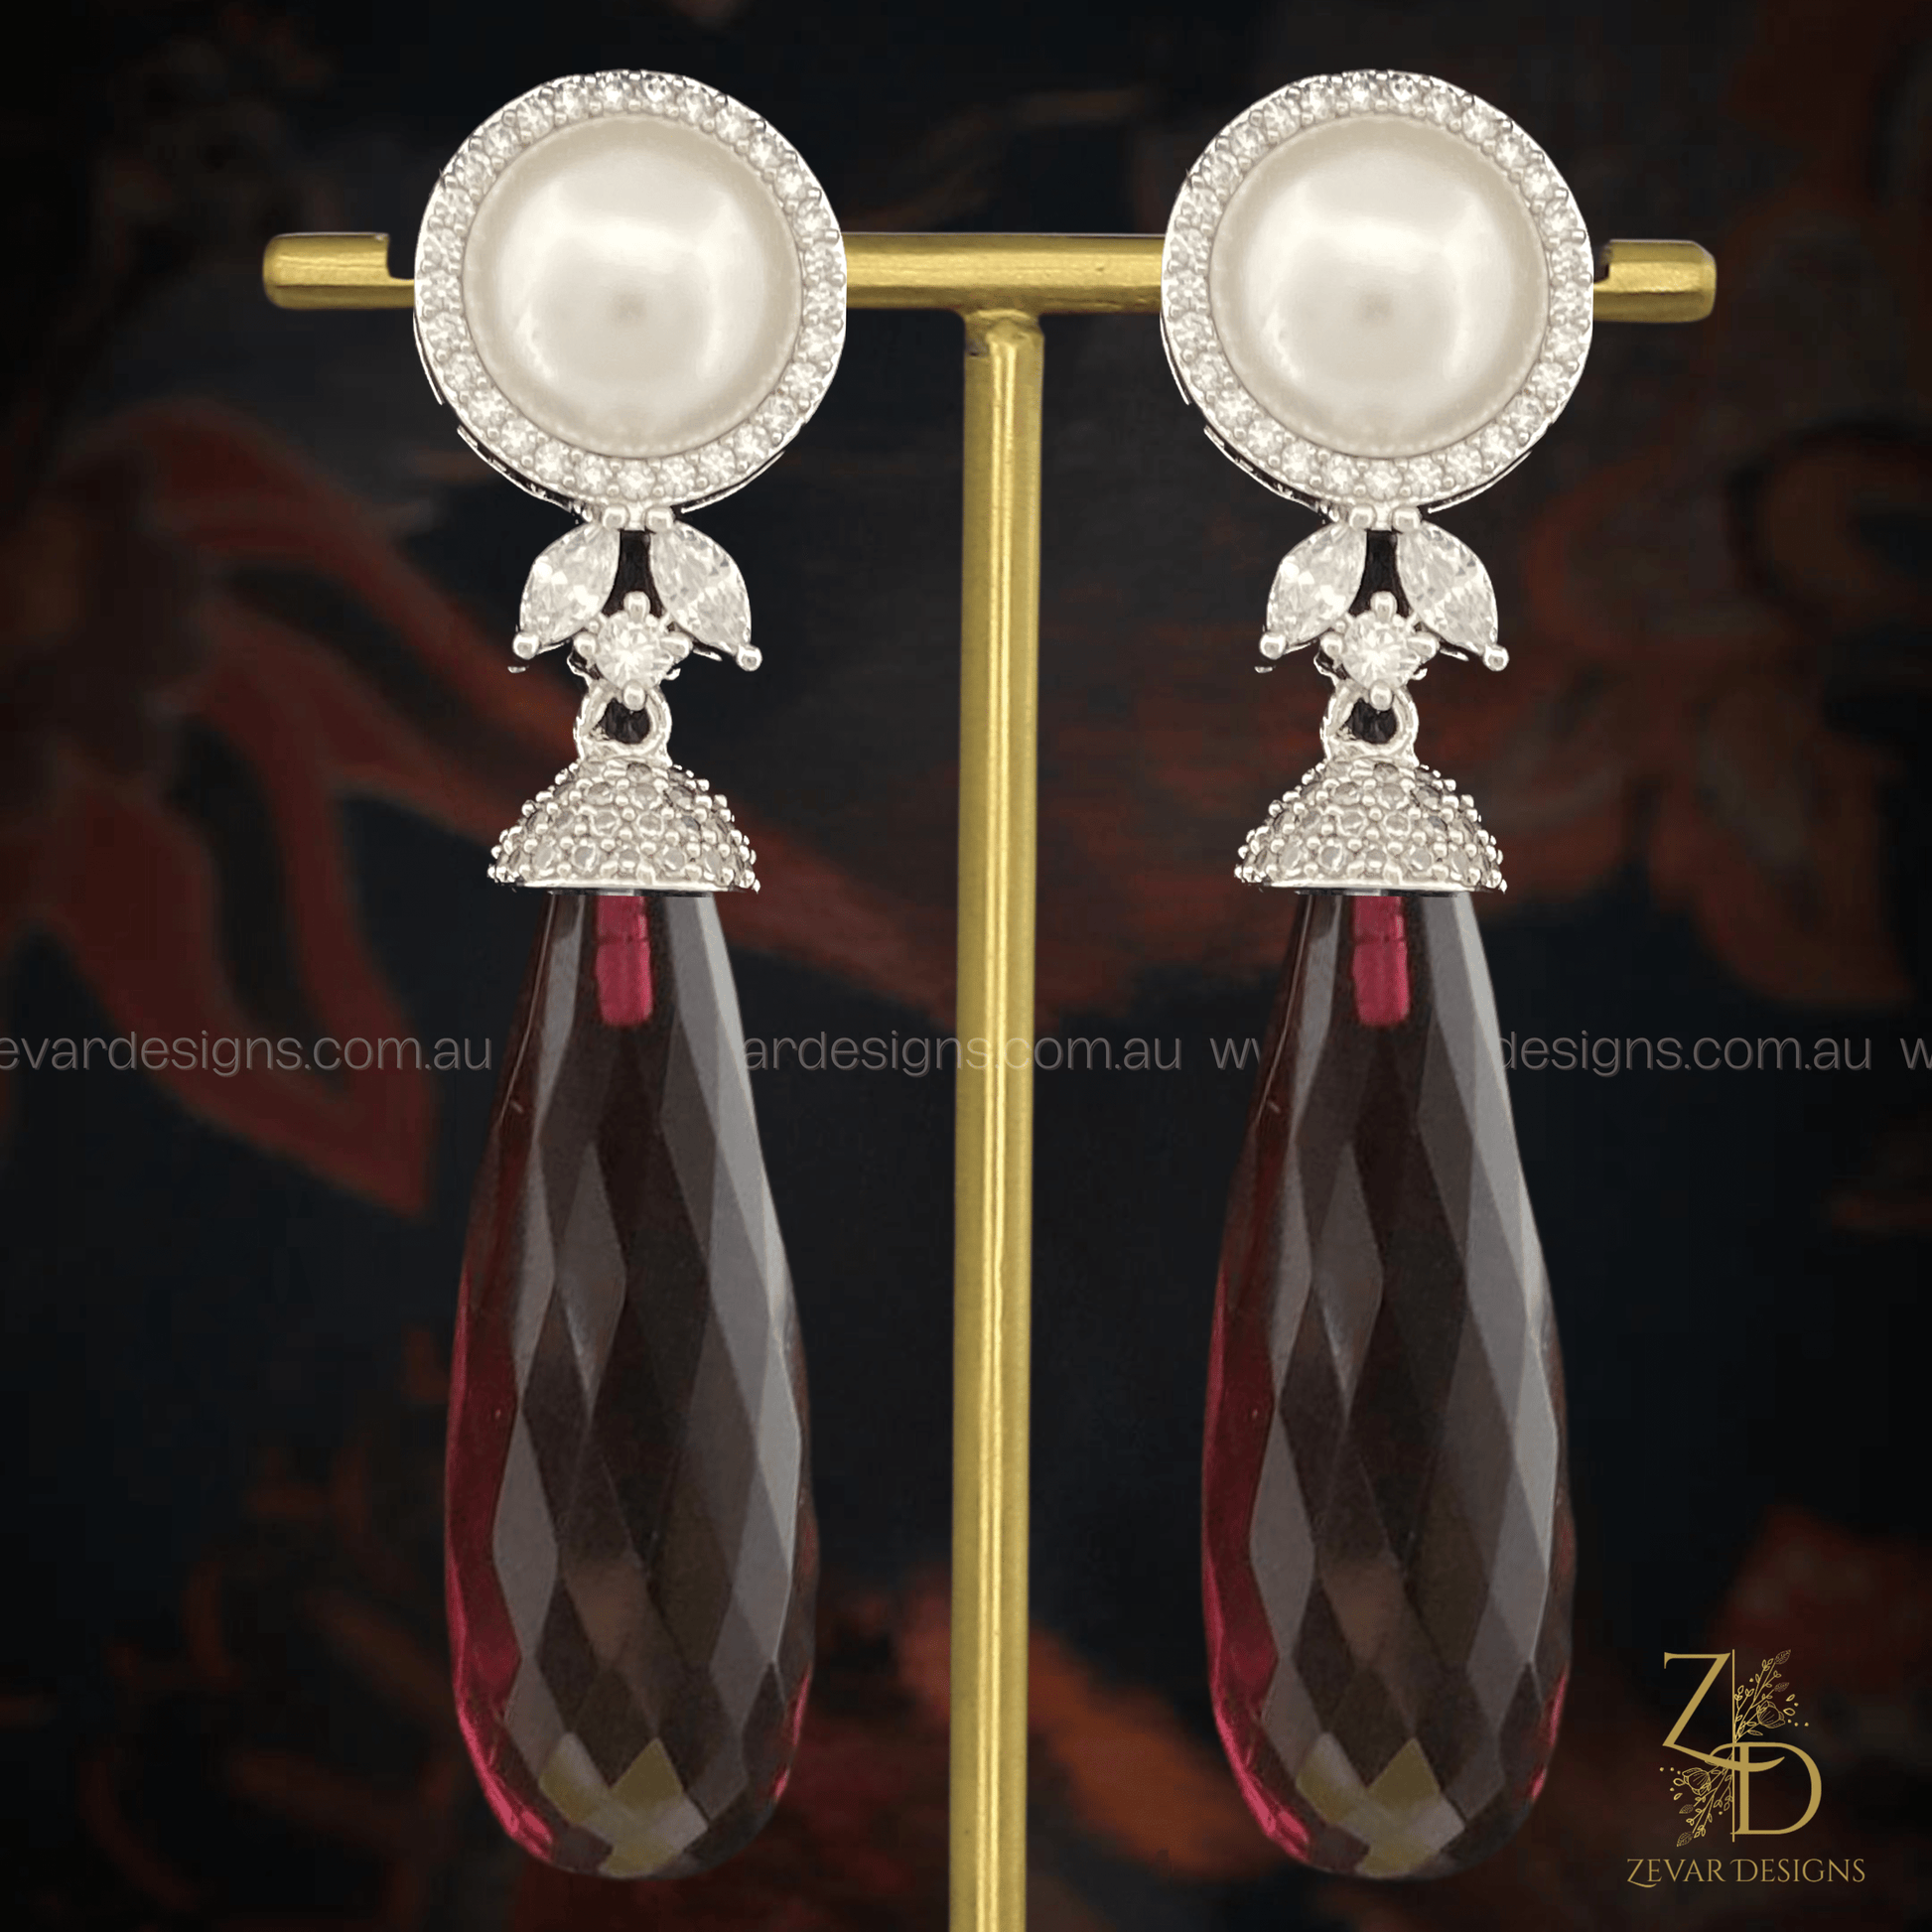 Zevar Designs Indo-Western Earrings Pearl & AD Drop Earrings - Crystal Red